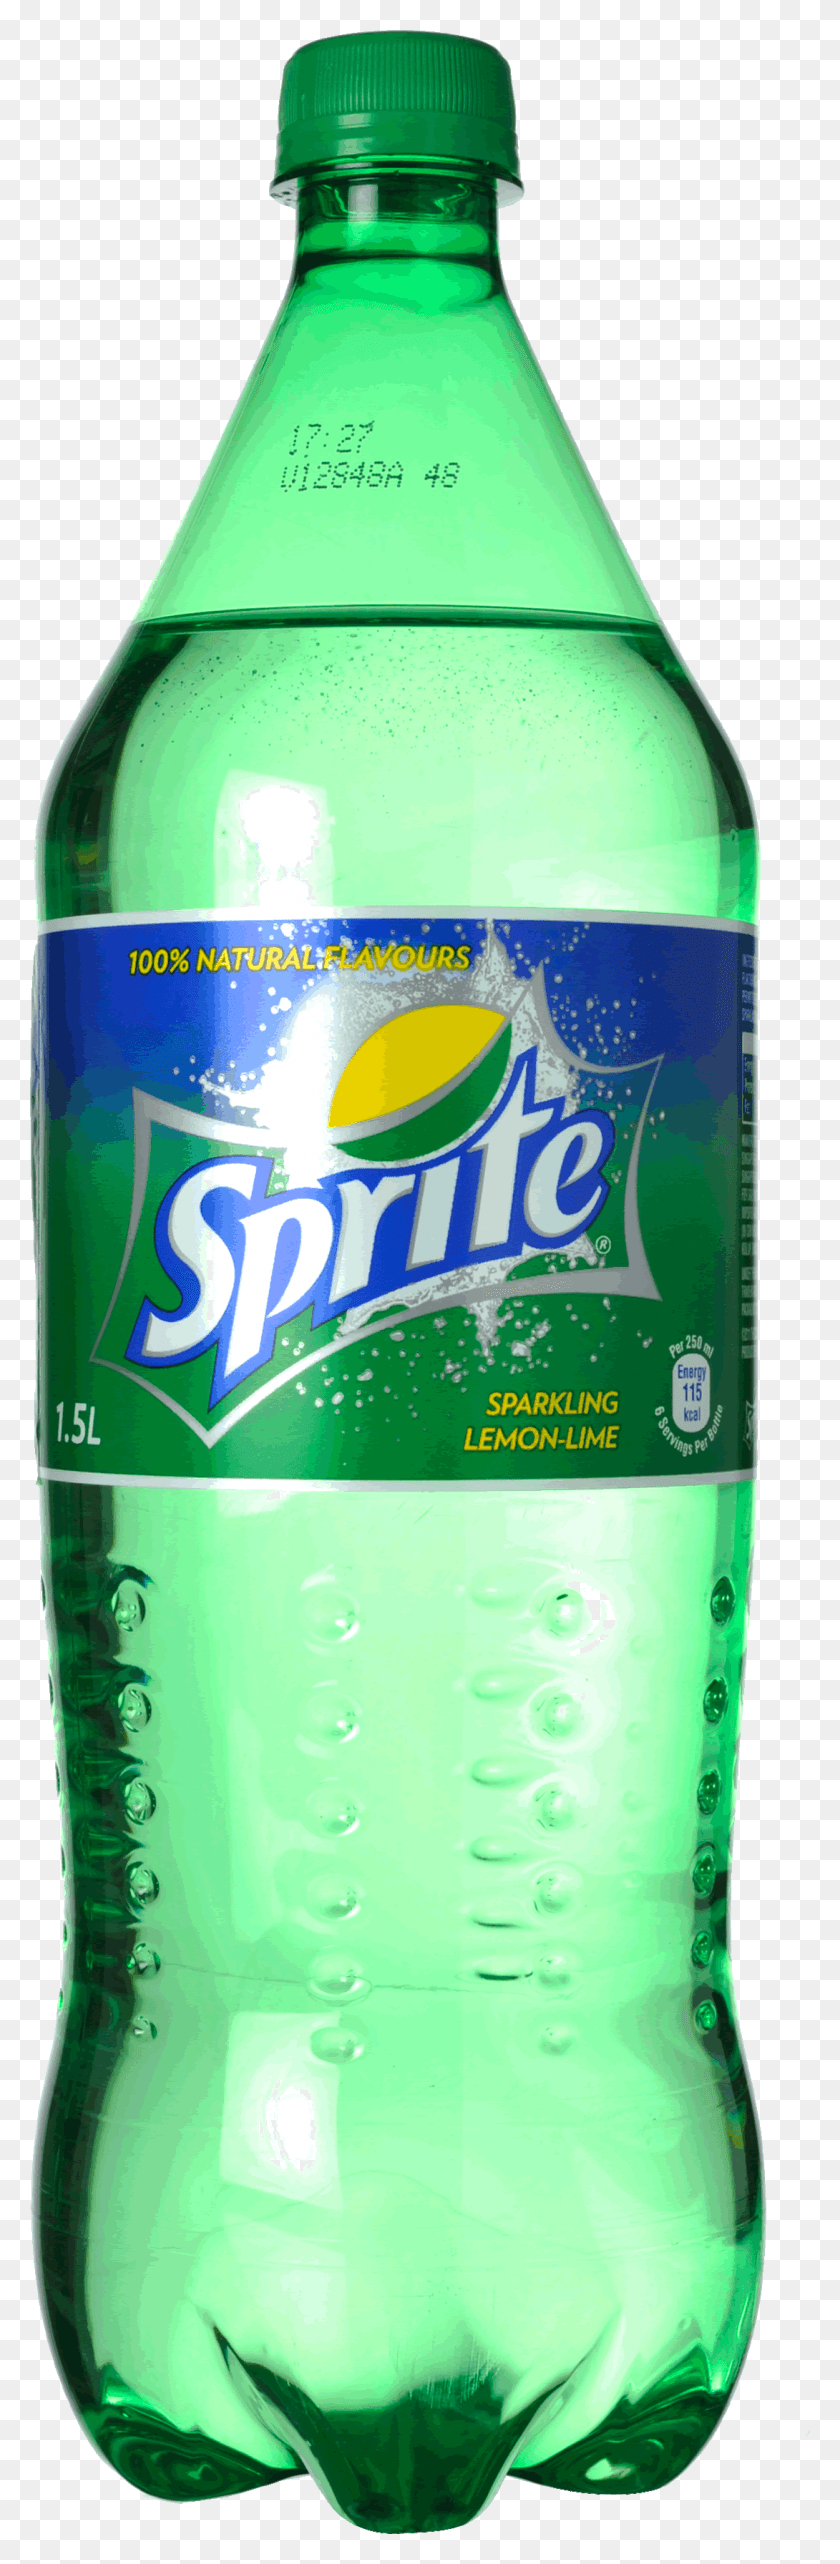 1090x3500 Sprite Bottle Image Газированная Вода В Пакистане, Пиво, Алкоголь, Напитки Hd Png Скачать